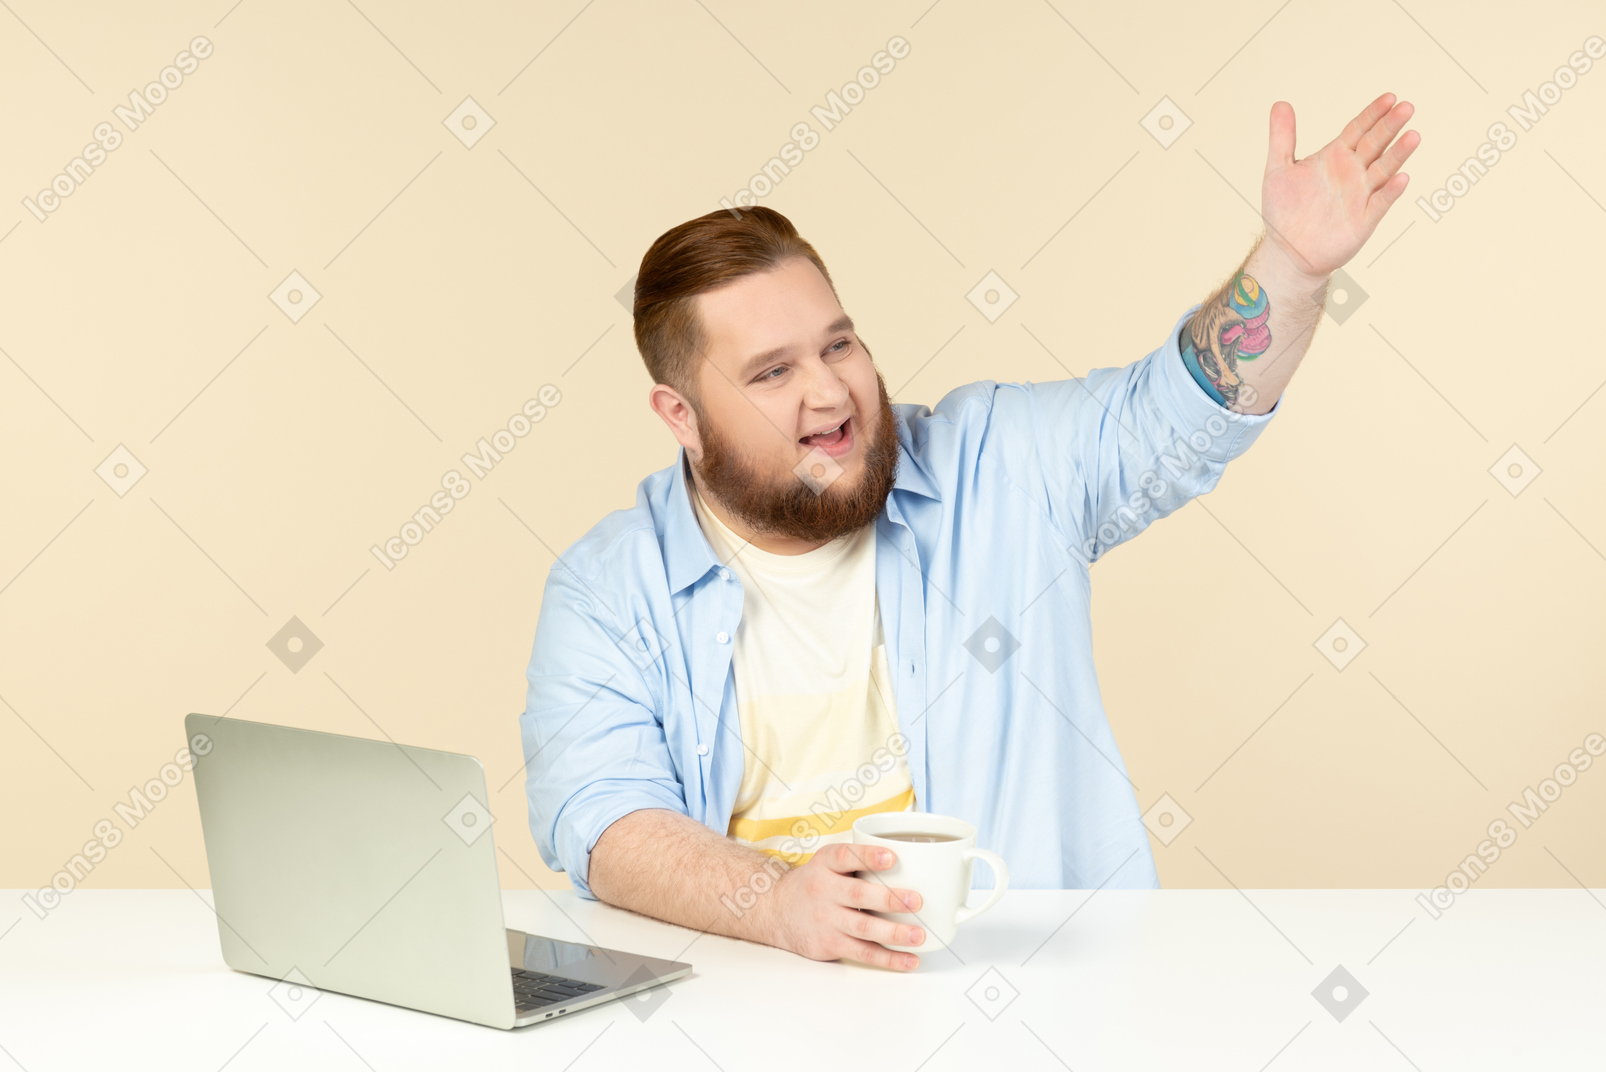 Sonriente joven con sobrepeso sentado frente a la computadora portátil y como saludar a alguien